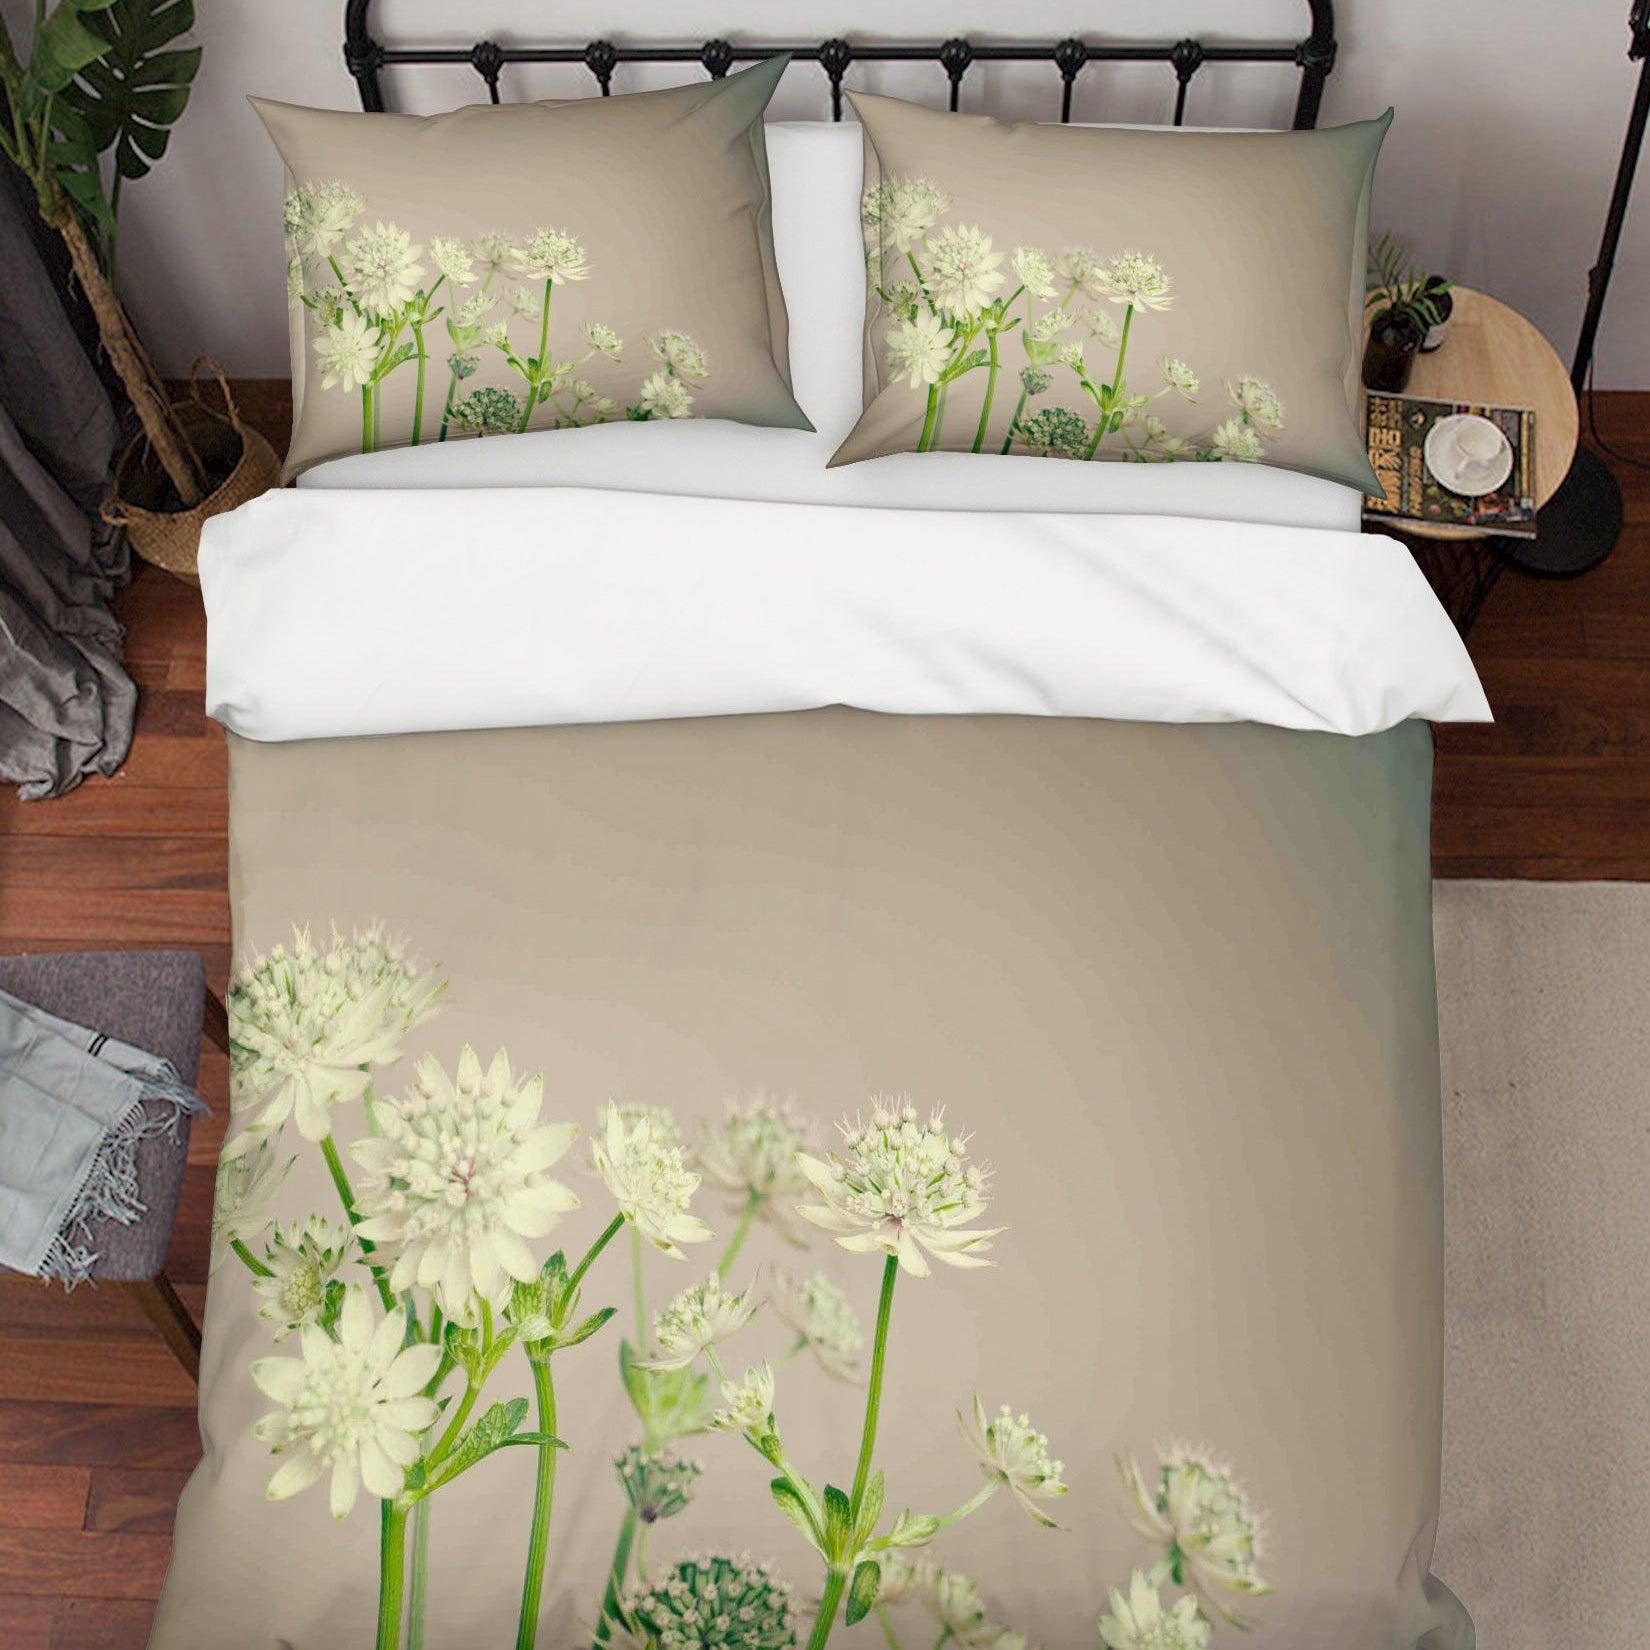 3D White Floral Pattern Quilt Cover Set Bedding Set Duvet Cover Pillowcases LQH A147- Jess Art Decoration